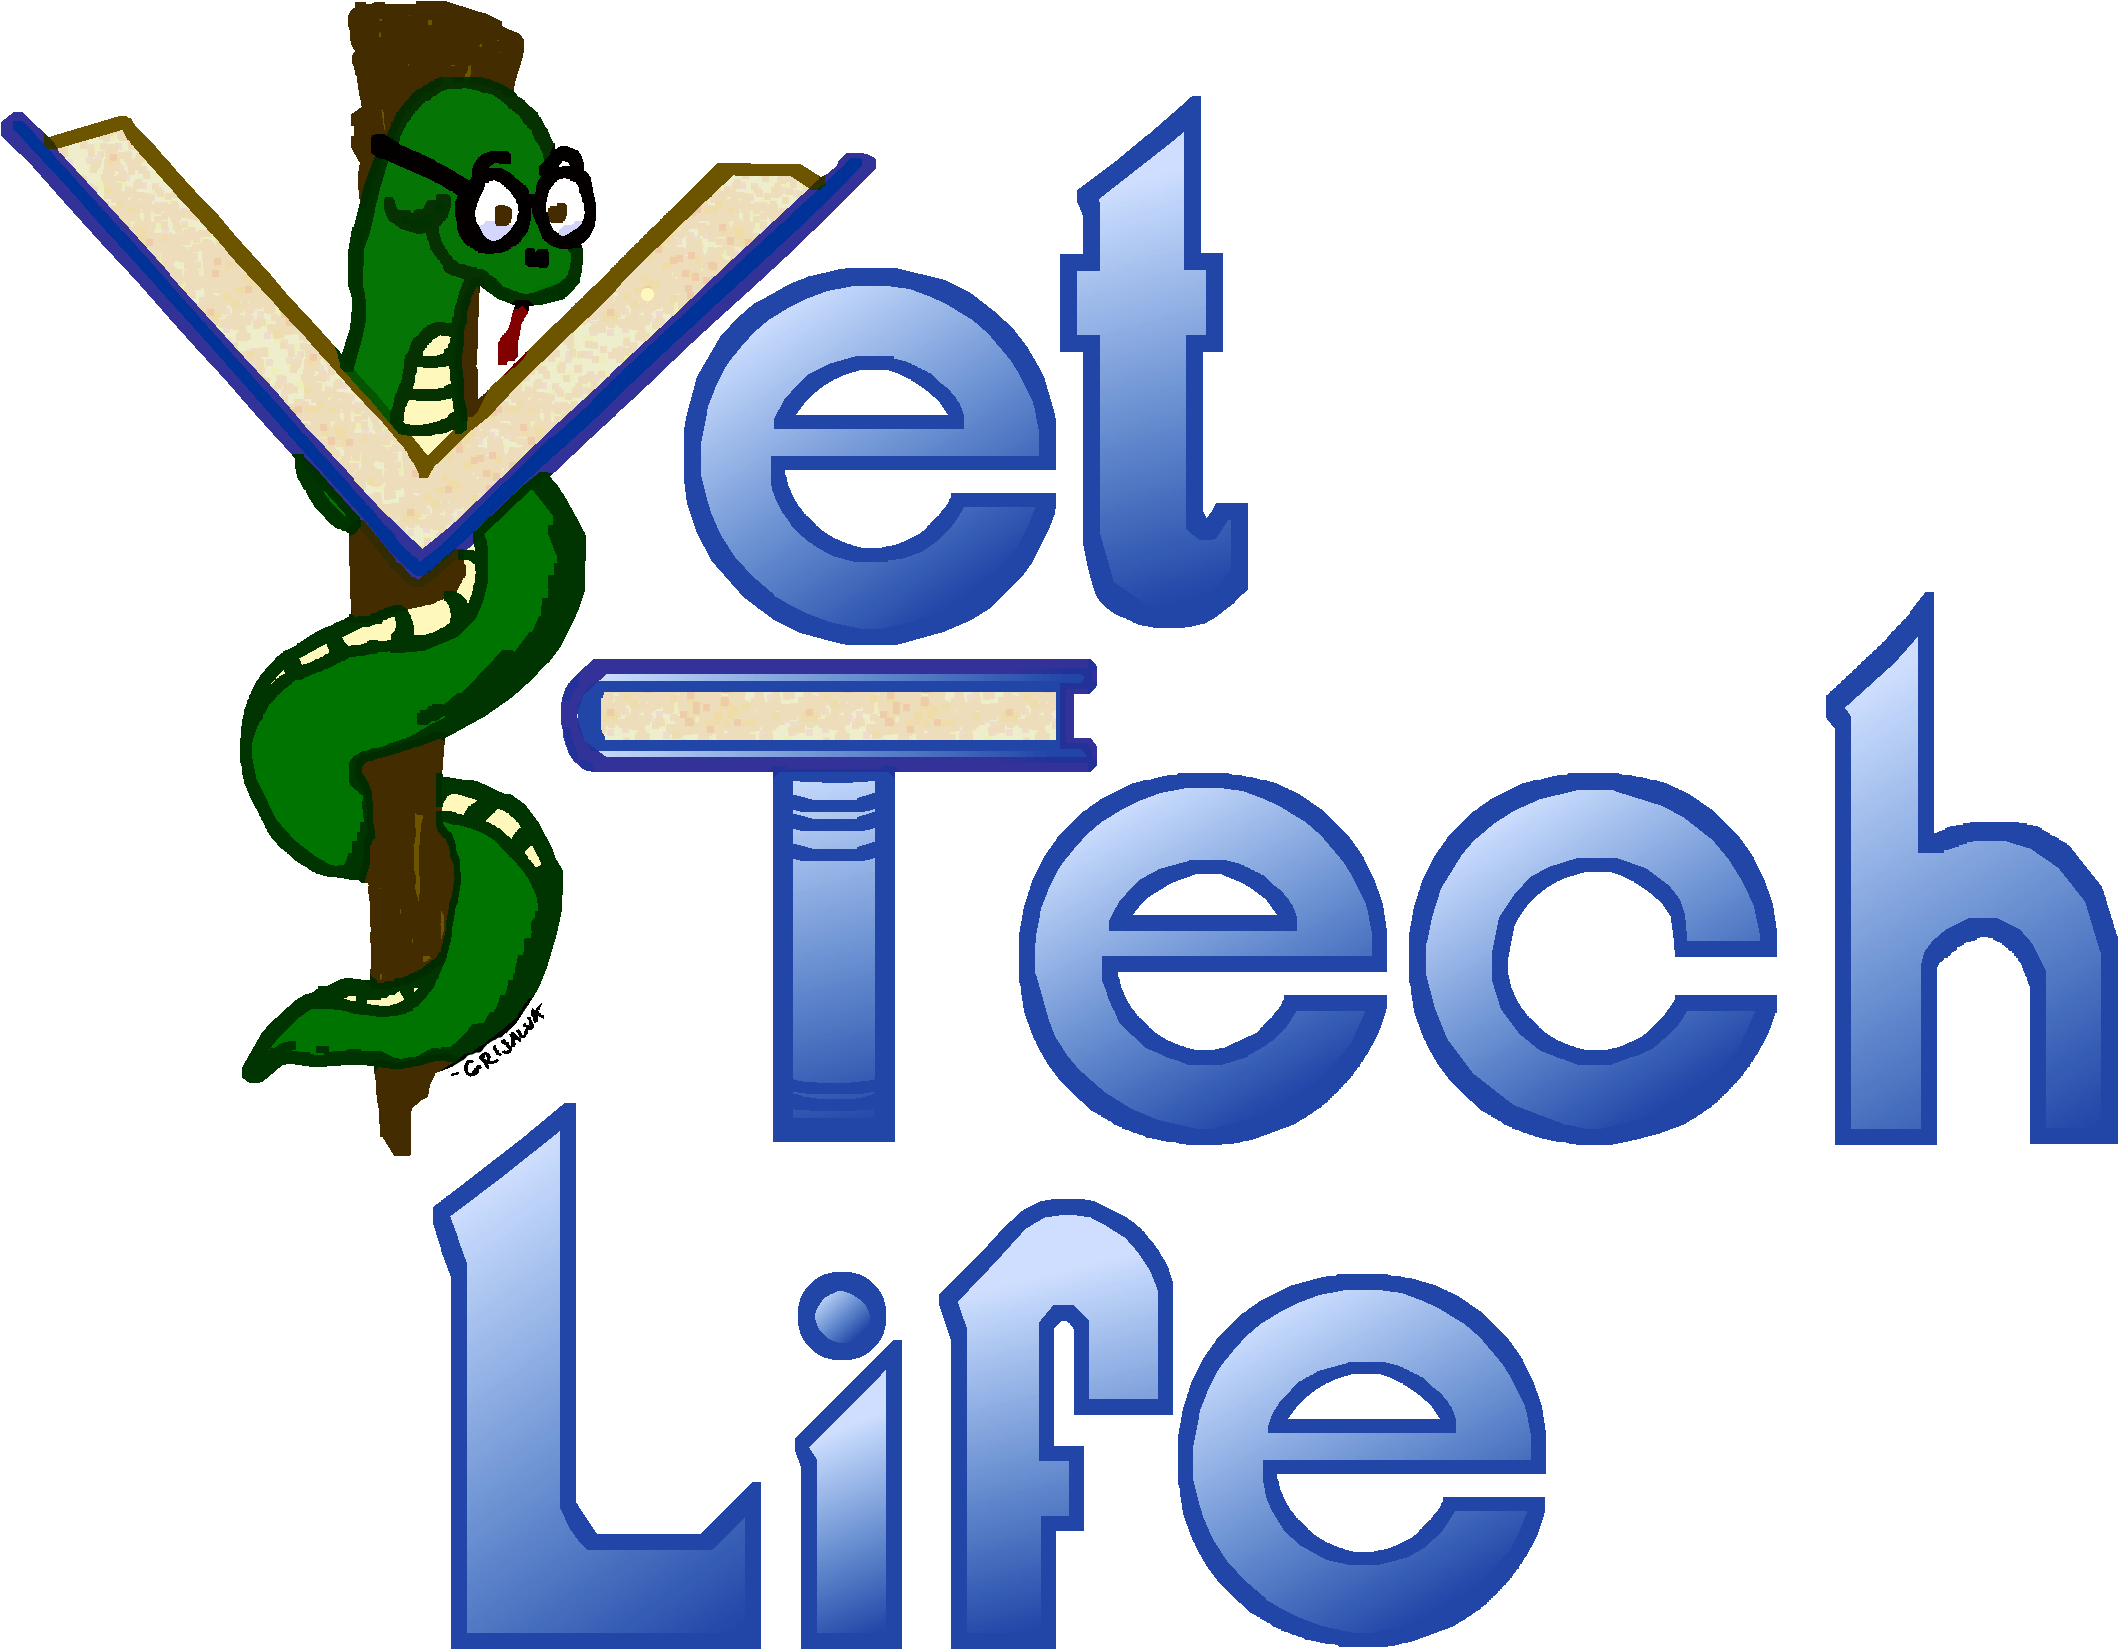 Vettechlife Logo - Vet Tech Logo Clipart (2191x1714), Png Download